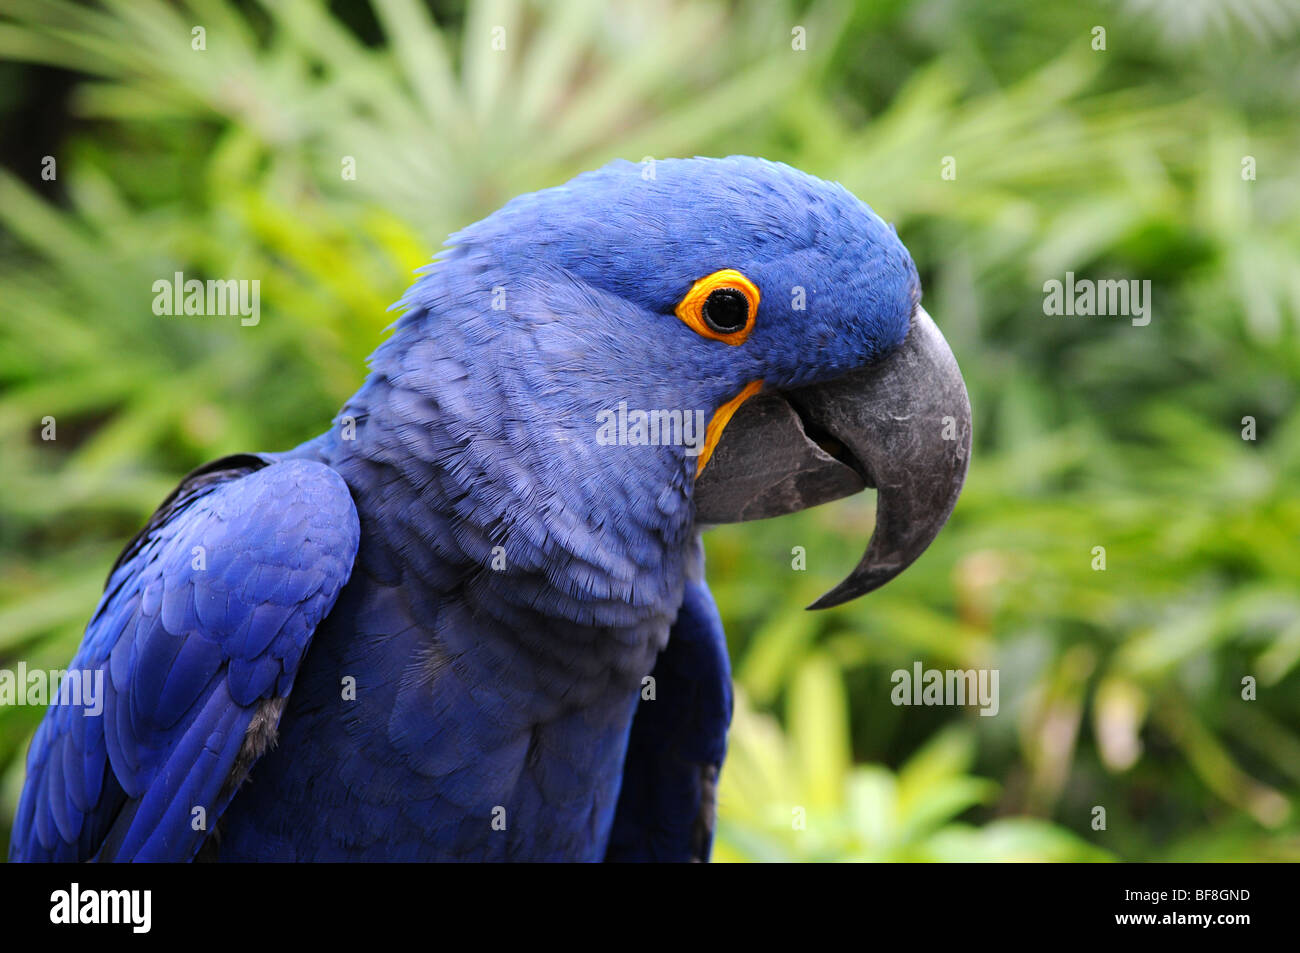 Azul guacamayo jacinto parrot en su entorno natural Foto de stock